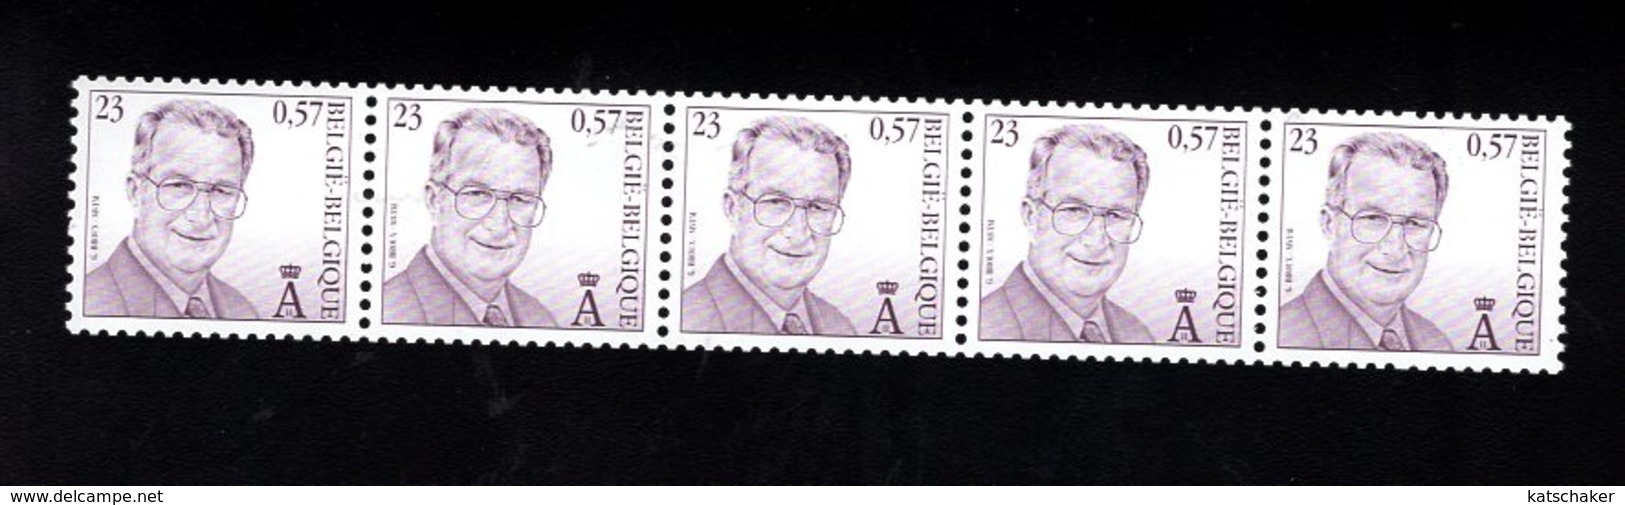 703887916 BELGIUM POSTFRIS MINT NEVER HINGED POSTFRISCH EINWANDFREI OCB R101A KONING ALBERT II - Coil Stamps